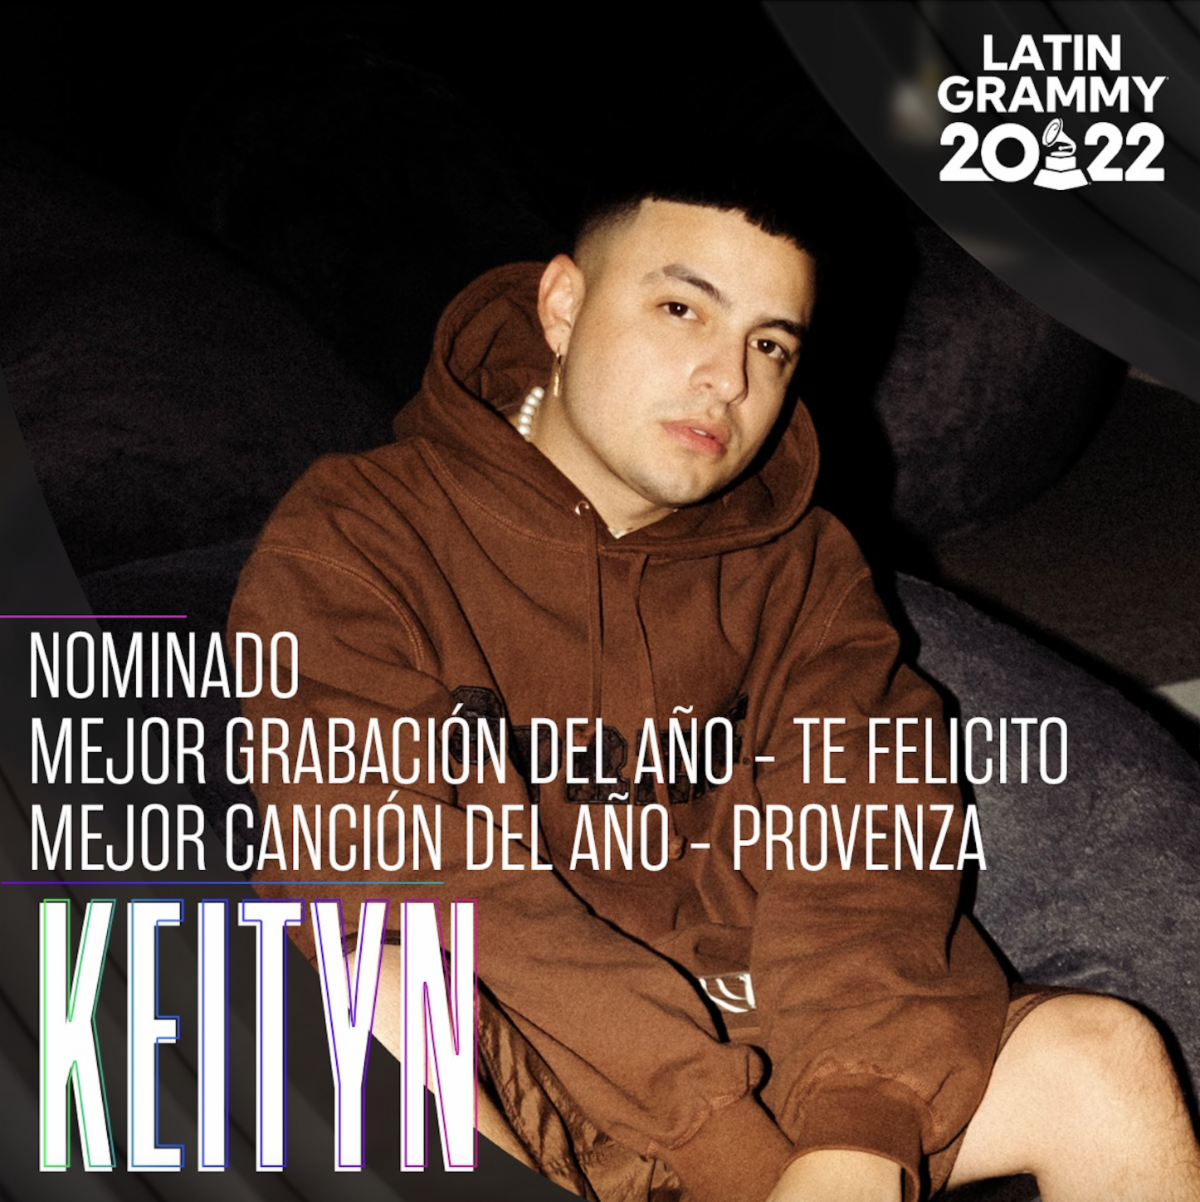 Keityn el artista, productor y compositor es nominado al Latín Grammy con “Te Felicito” y “Provenza”